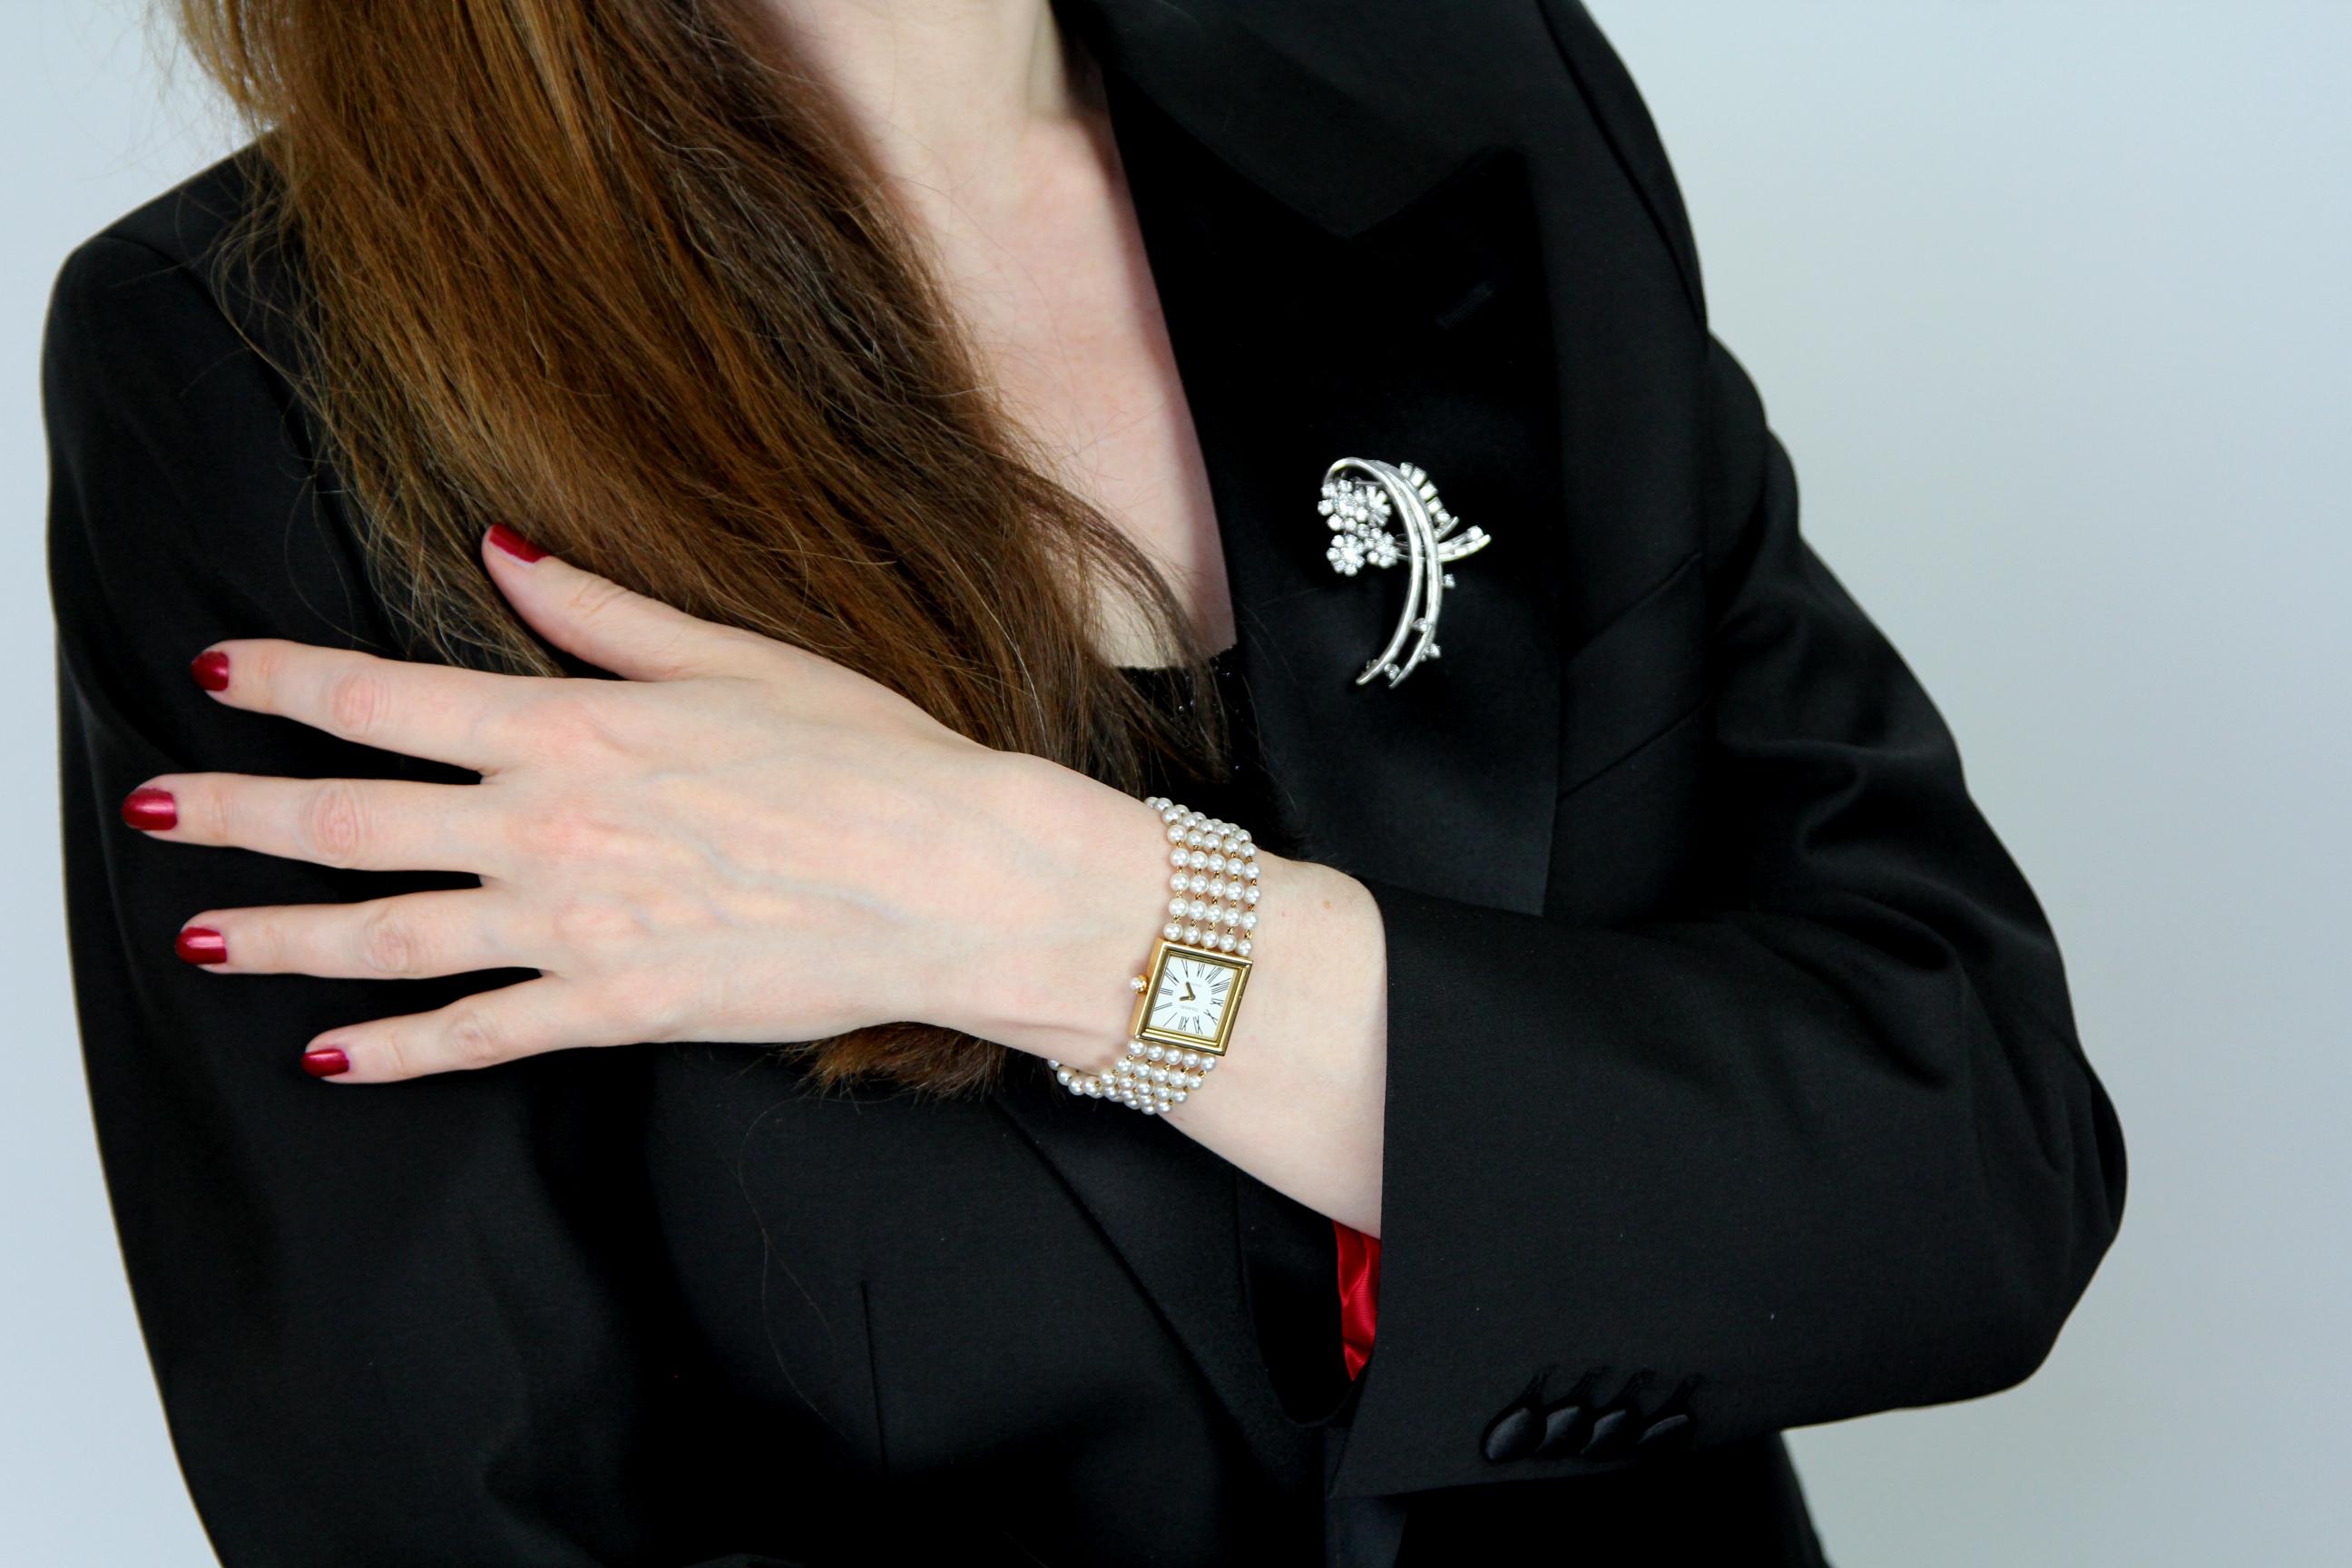 Eine schicke Uhr für das coole Mädchen in der Stadt.

Eine schöne, klassische Chanel Uhr aus warmem 18-karätigem Gelbgold mit einem eleganten quadratischen Zifferblatt mit römischen Ziffern.

Das Armband macht dies dekorativ und schick.  Fünf